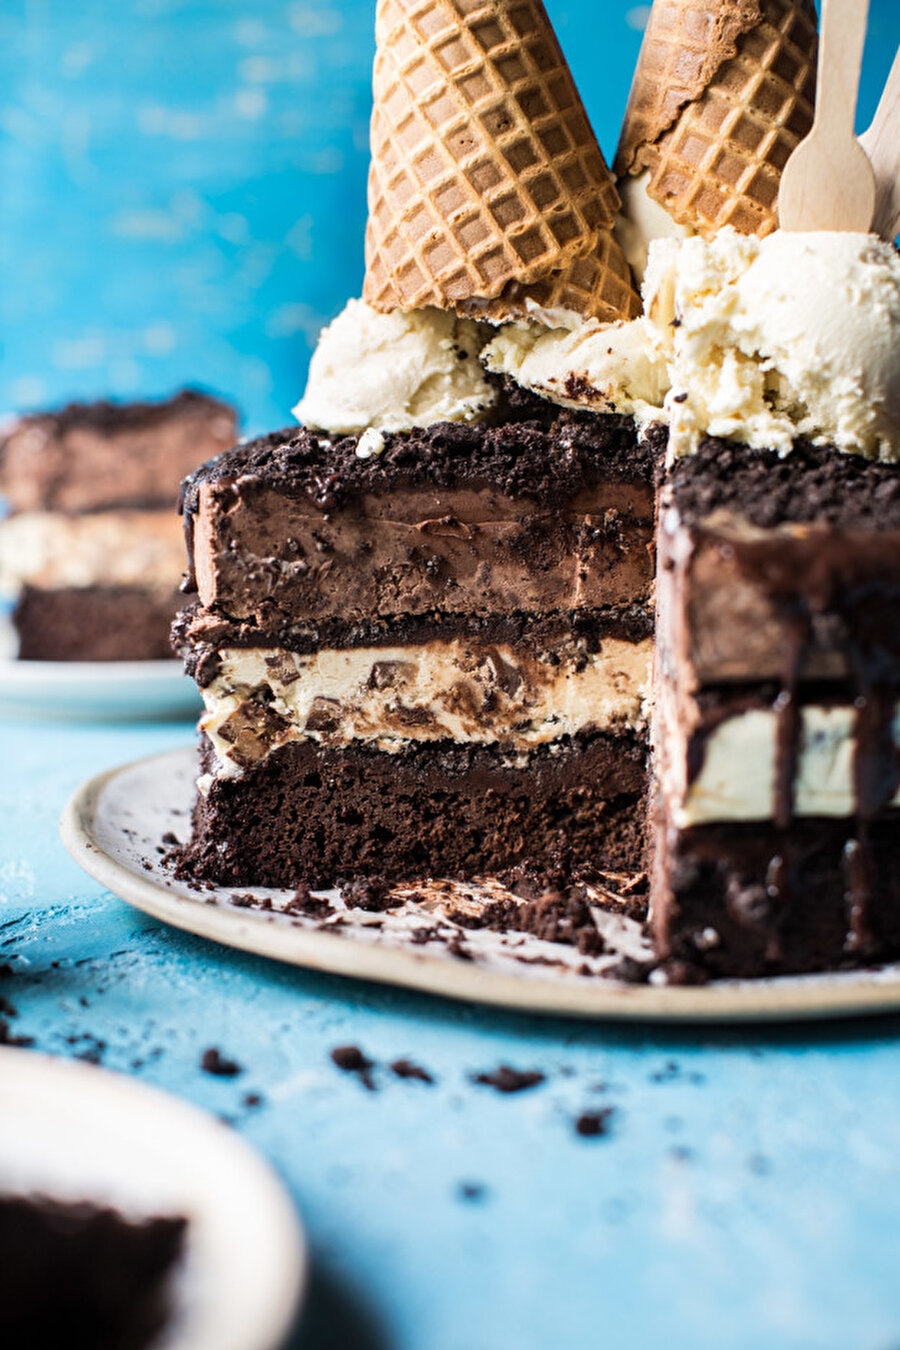 Krokon ile çikolata masalı

                                    
                                    
                                    
                                    
                                    
                                    
                                    
                                    
                                    
                                    
                                    Vanilya kokulu pasta kreması ve yumuşacık kek içindeki çıtır çıtır krokan lezzetine kim hayır diyebilir ki?
                                
                                
                                
                                
                                
                                
                                
                                
                                
                                
                                